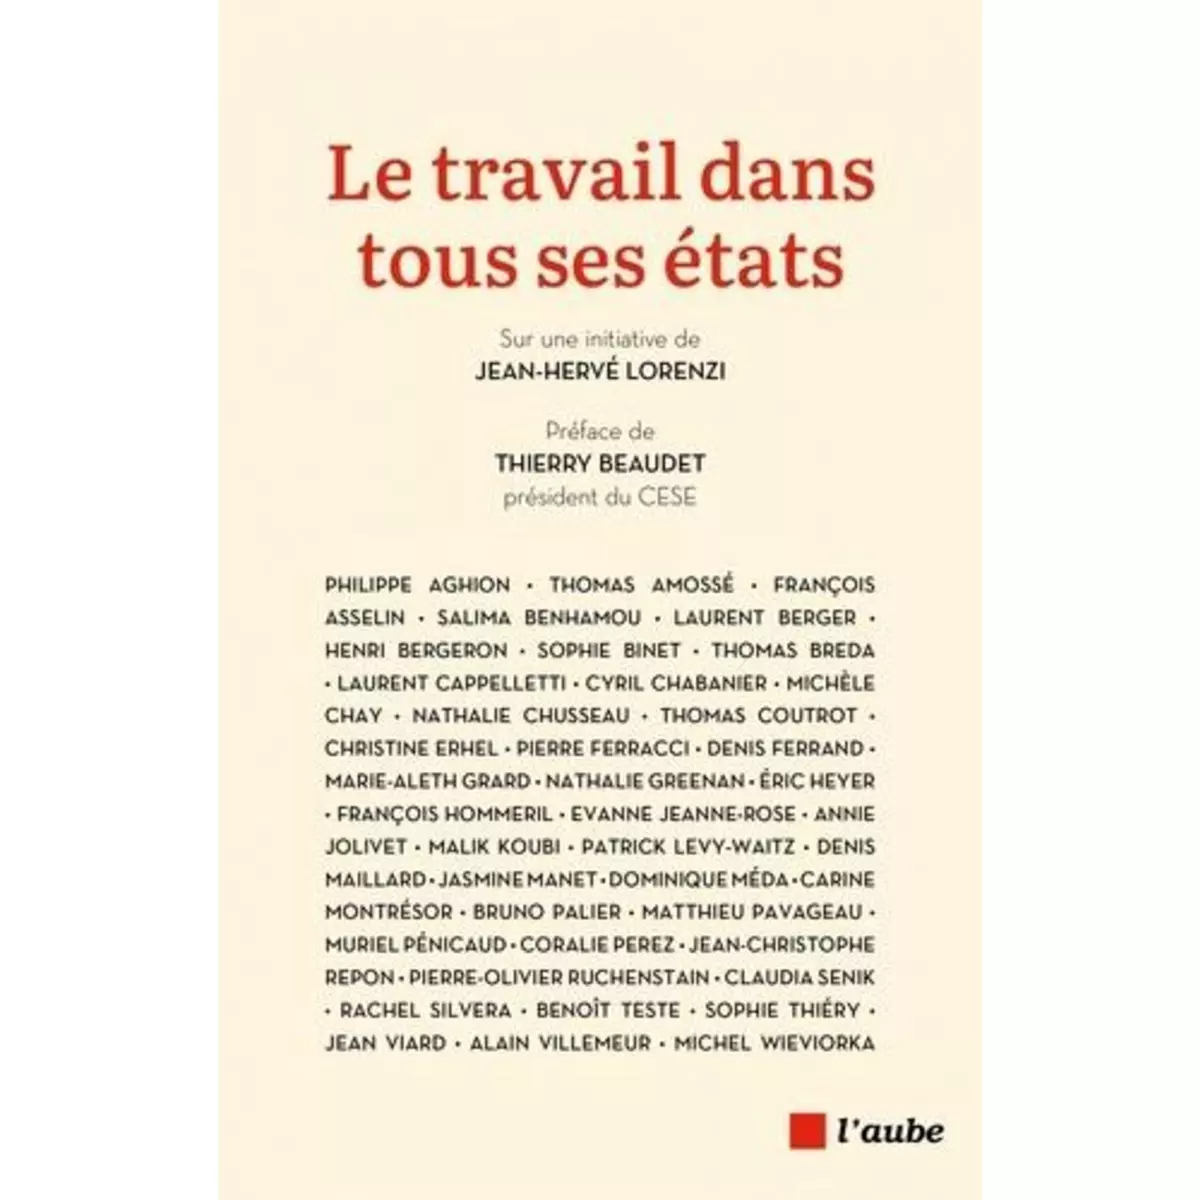  LE TRAVAIL DANS TOUS SES ETATS, Lorenzi Jean-Hervé